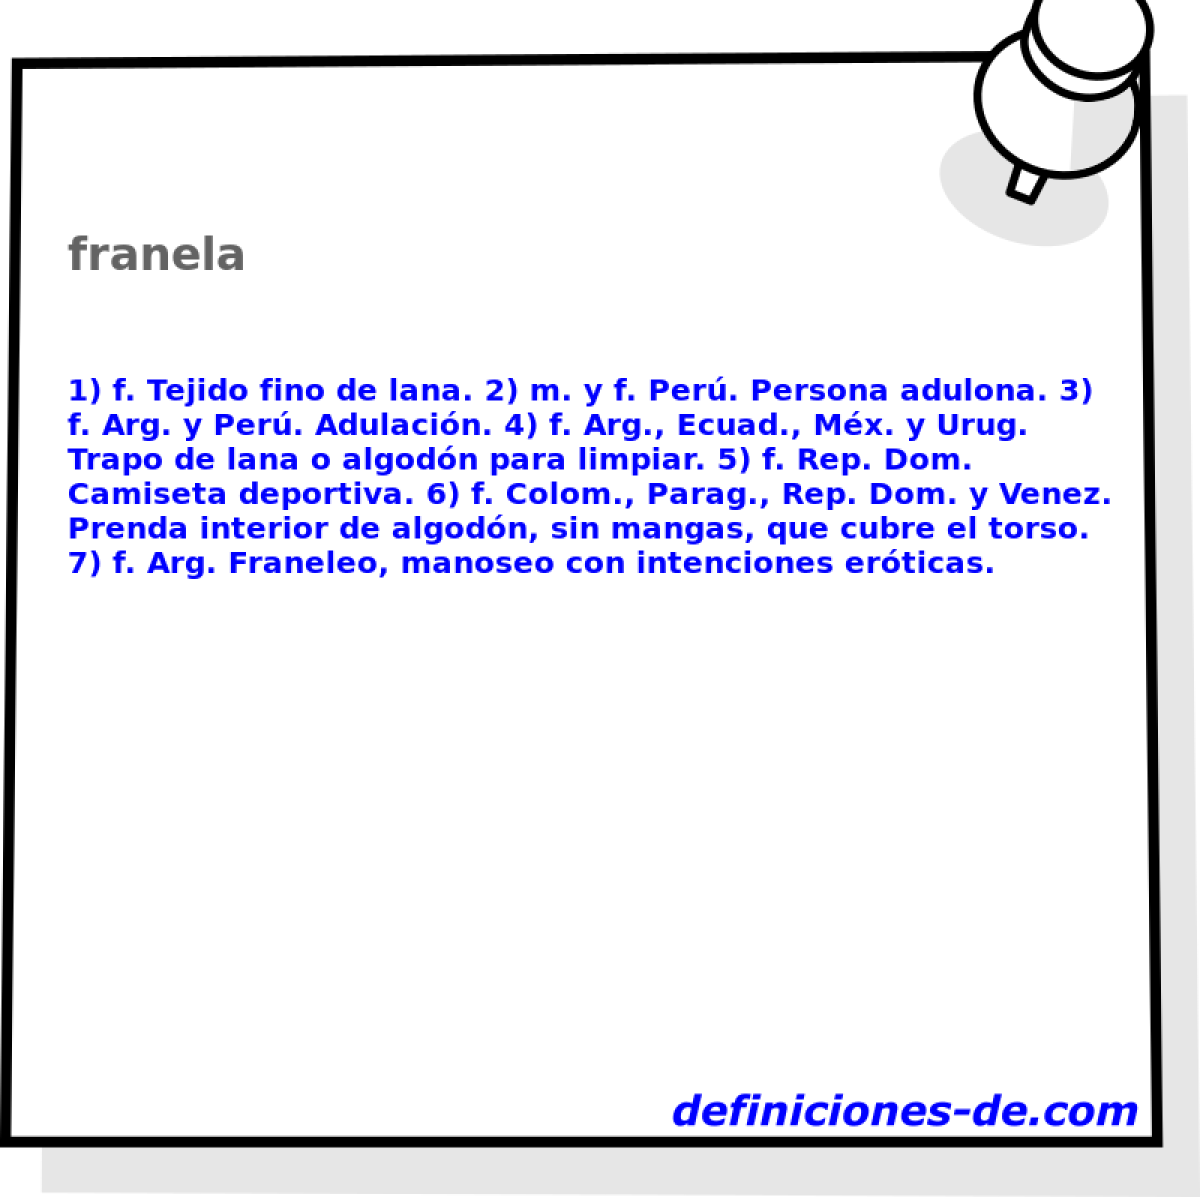 franela 